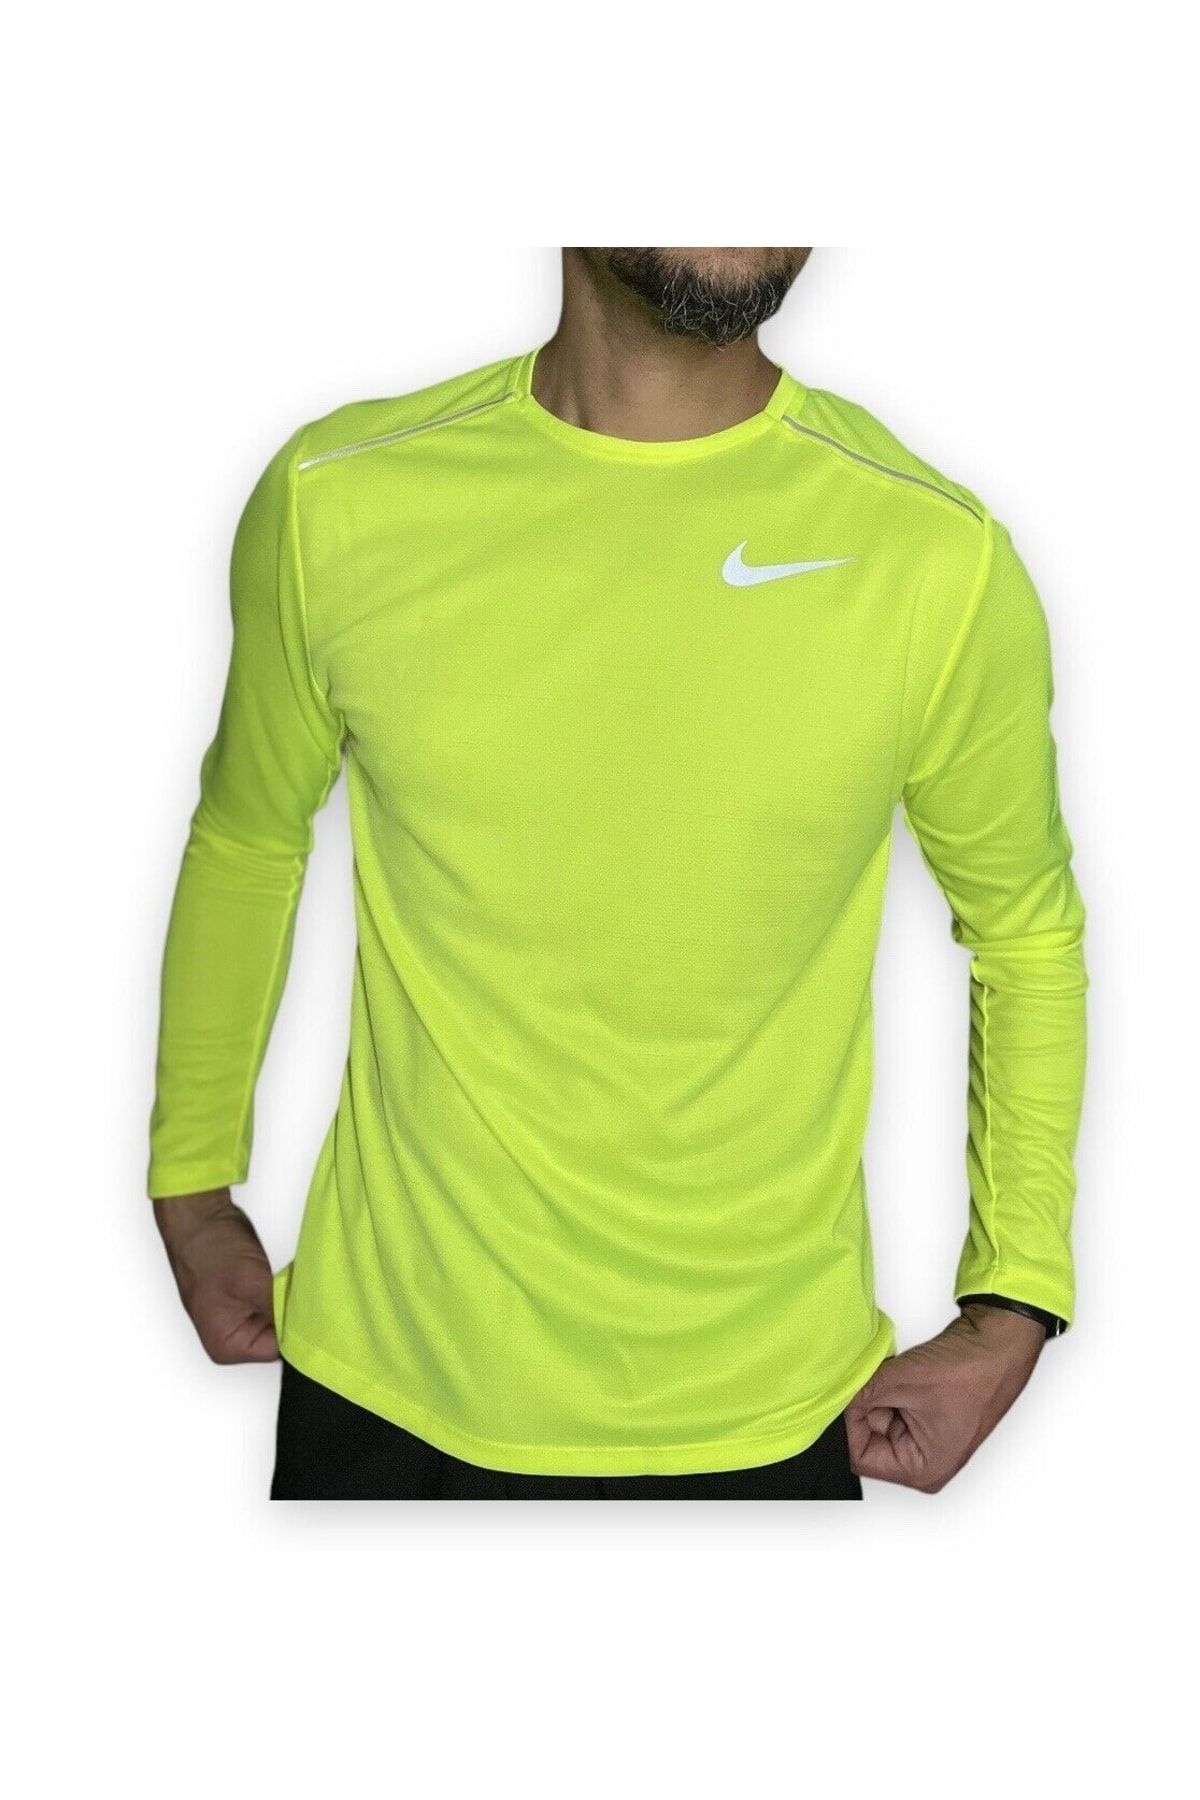 Nike Men's Long Sleeve Dry Miler Running Shirt